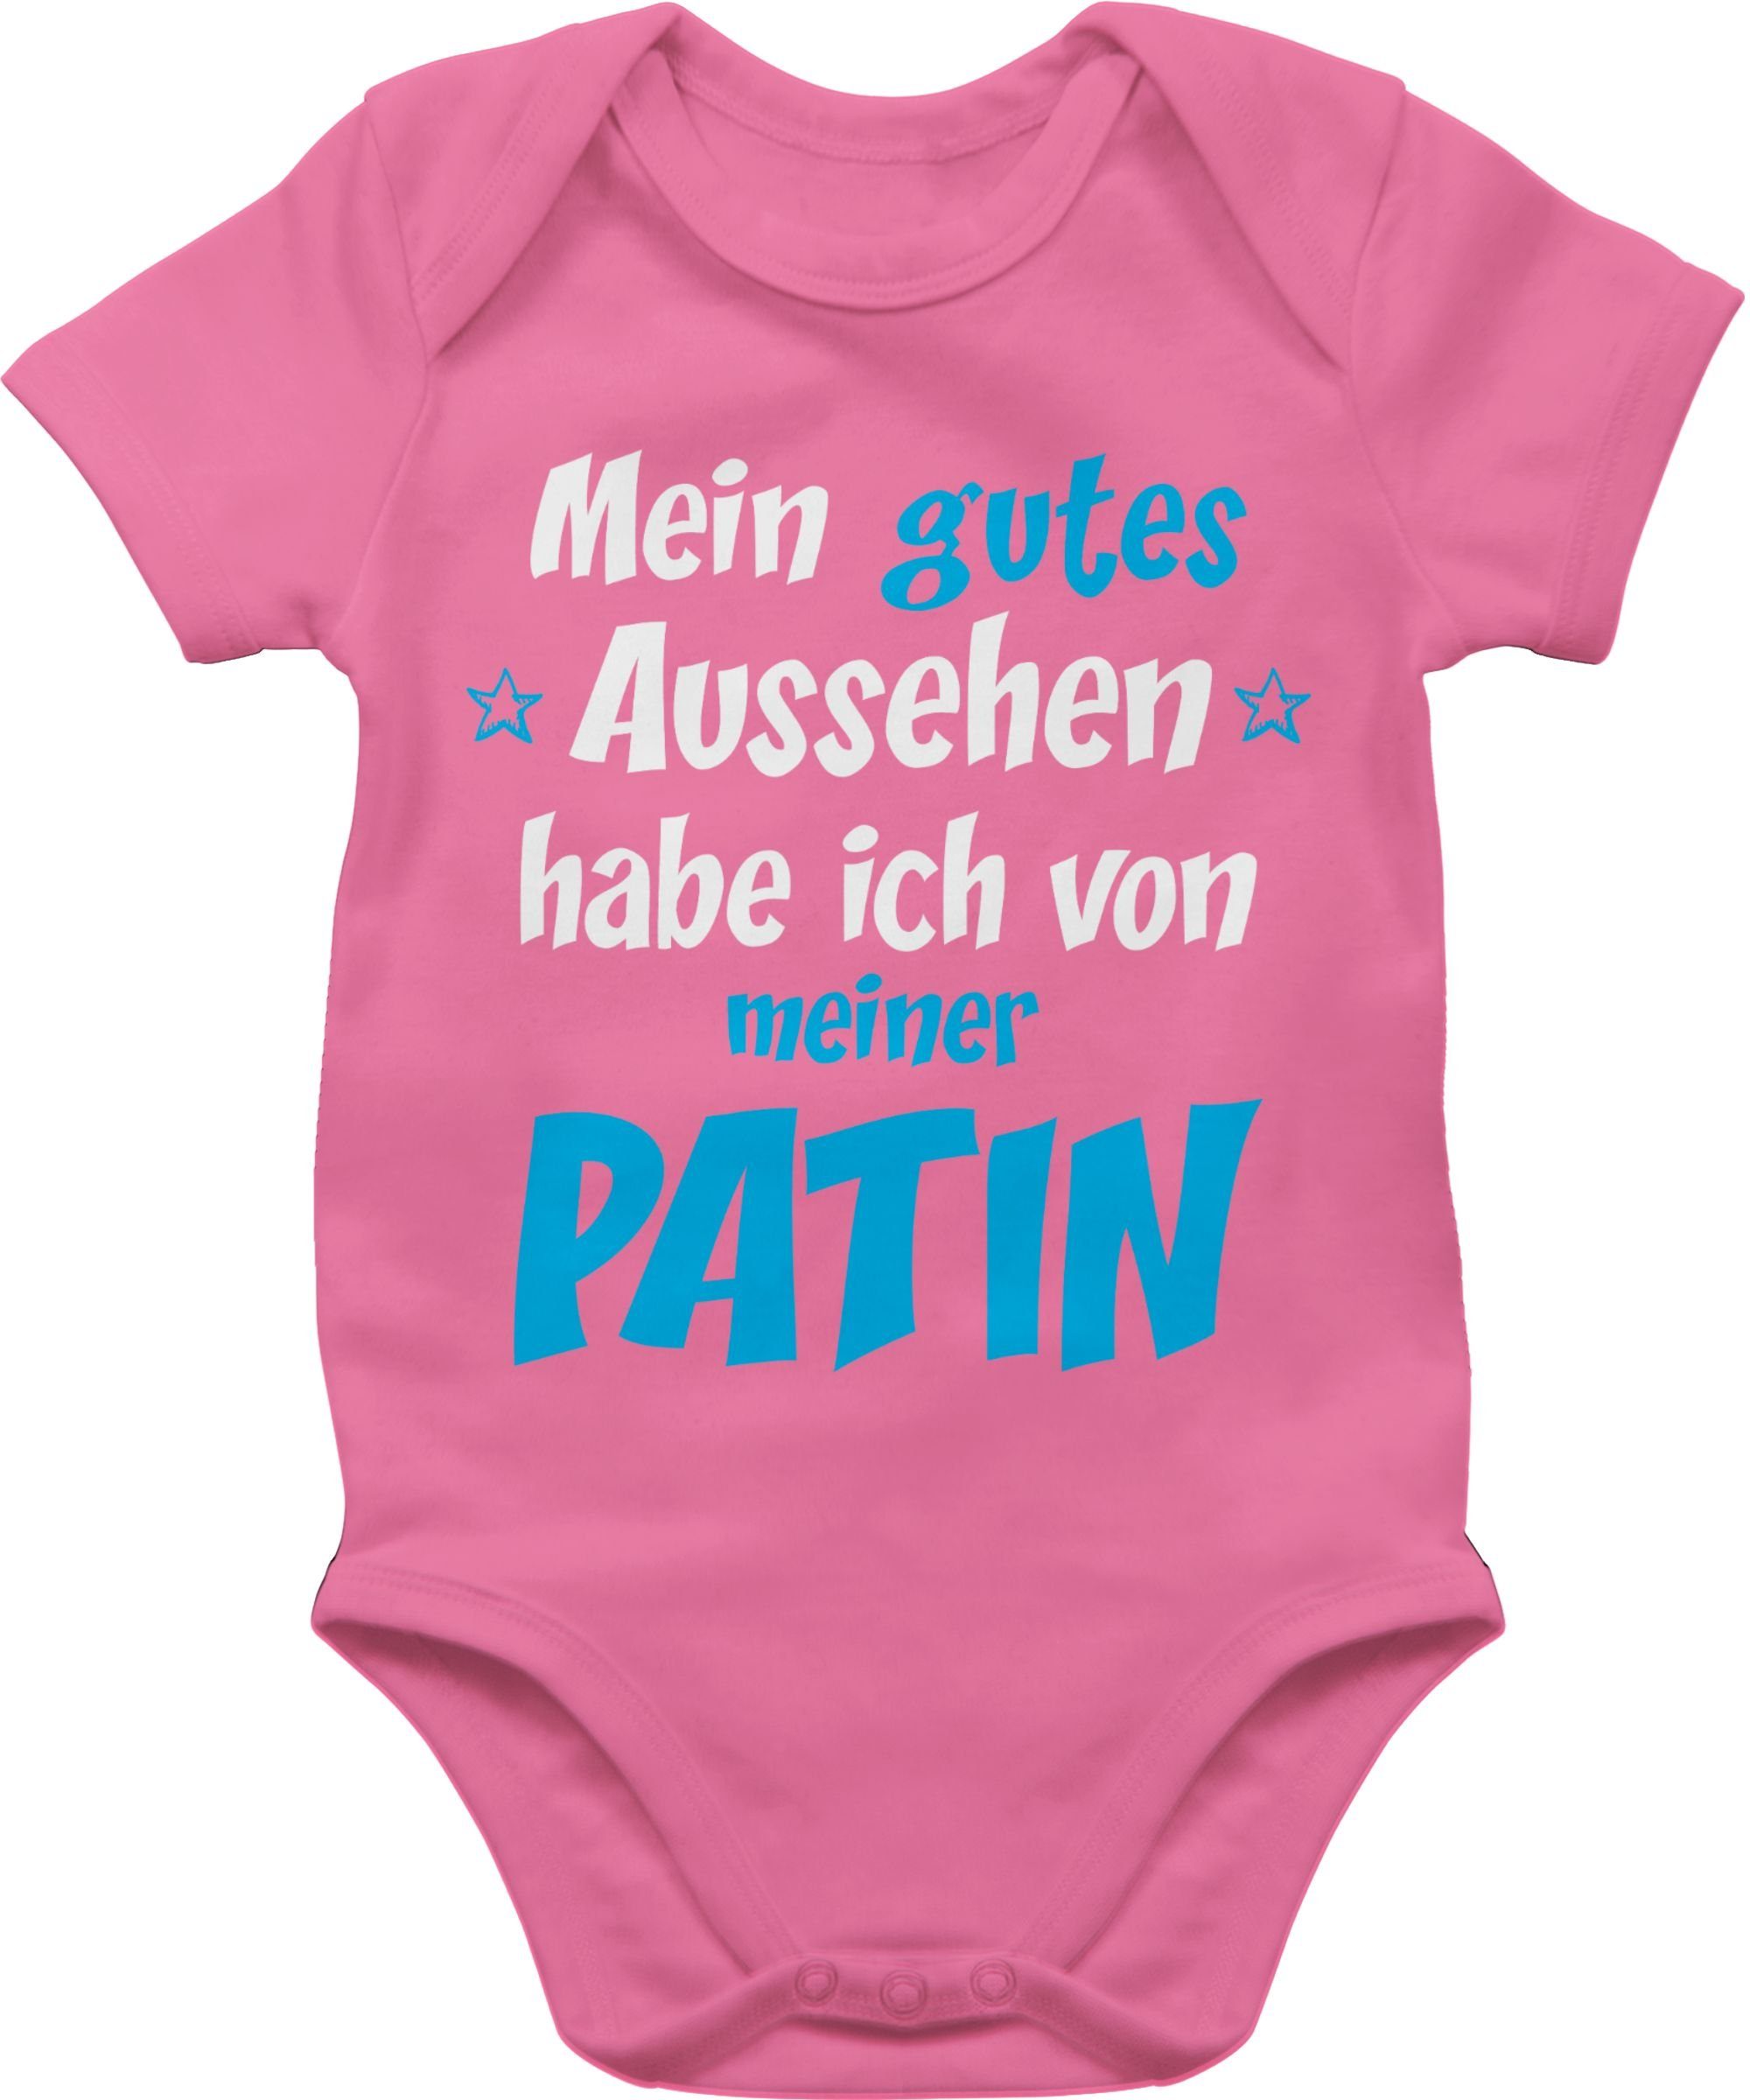 Shirtracer Shirtbody Gutes Aussehen Patin Junge - blau/weiß Patentante Baby 2 Pink